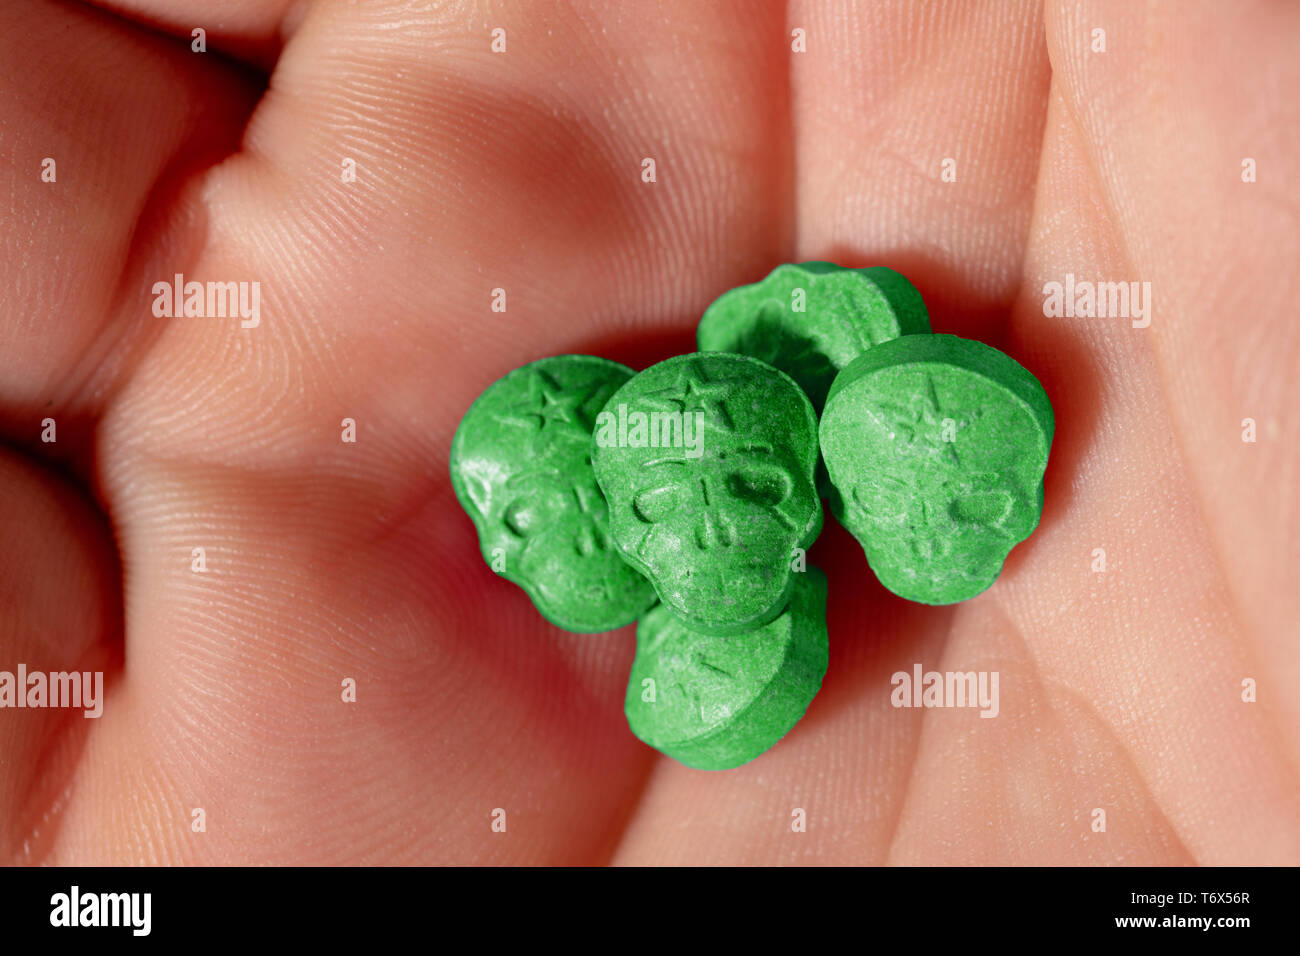 Topview palm kaukasischen männliche Hand mit einem kleinen Haufen grün Schädel, Ecstasy, MDMA, Amphetaminen oder Medikamente wie ein Schädel geprägt. Stockfoto